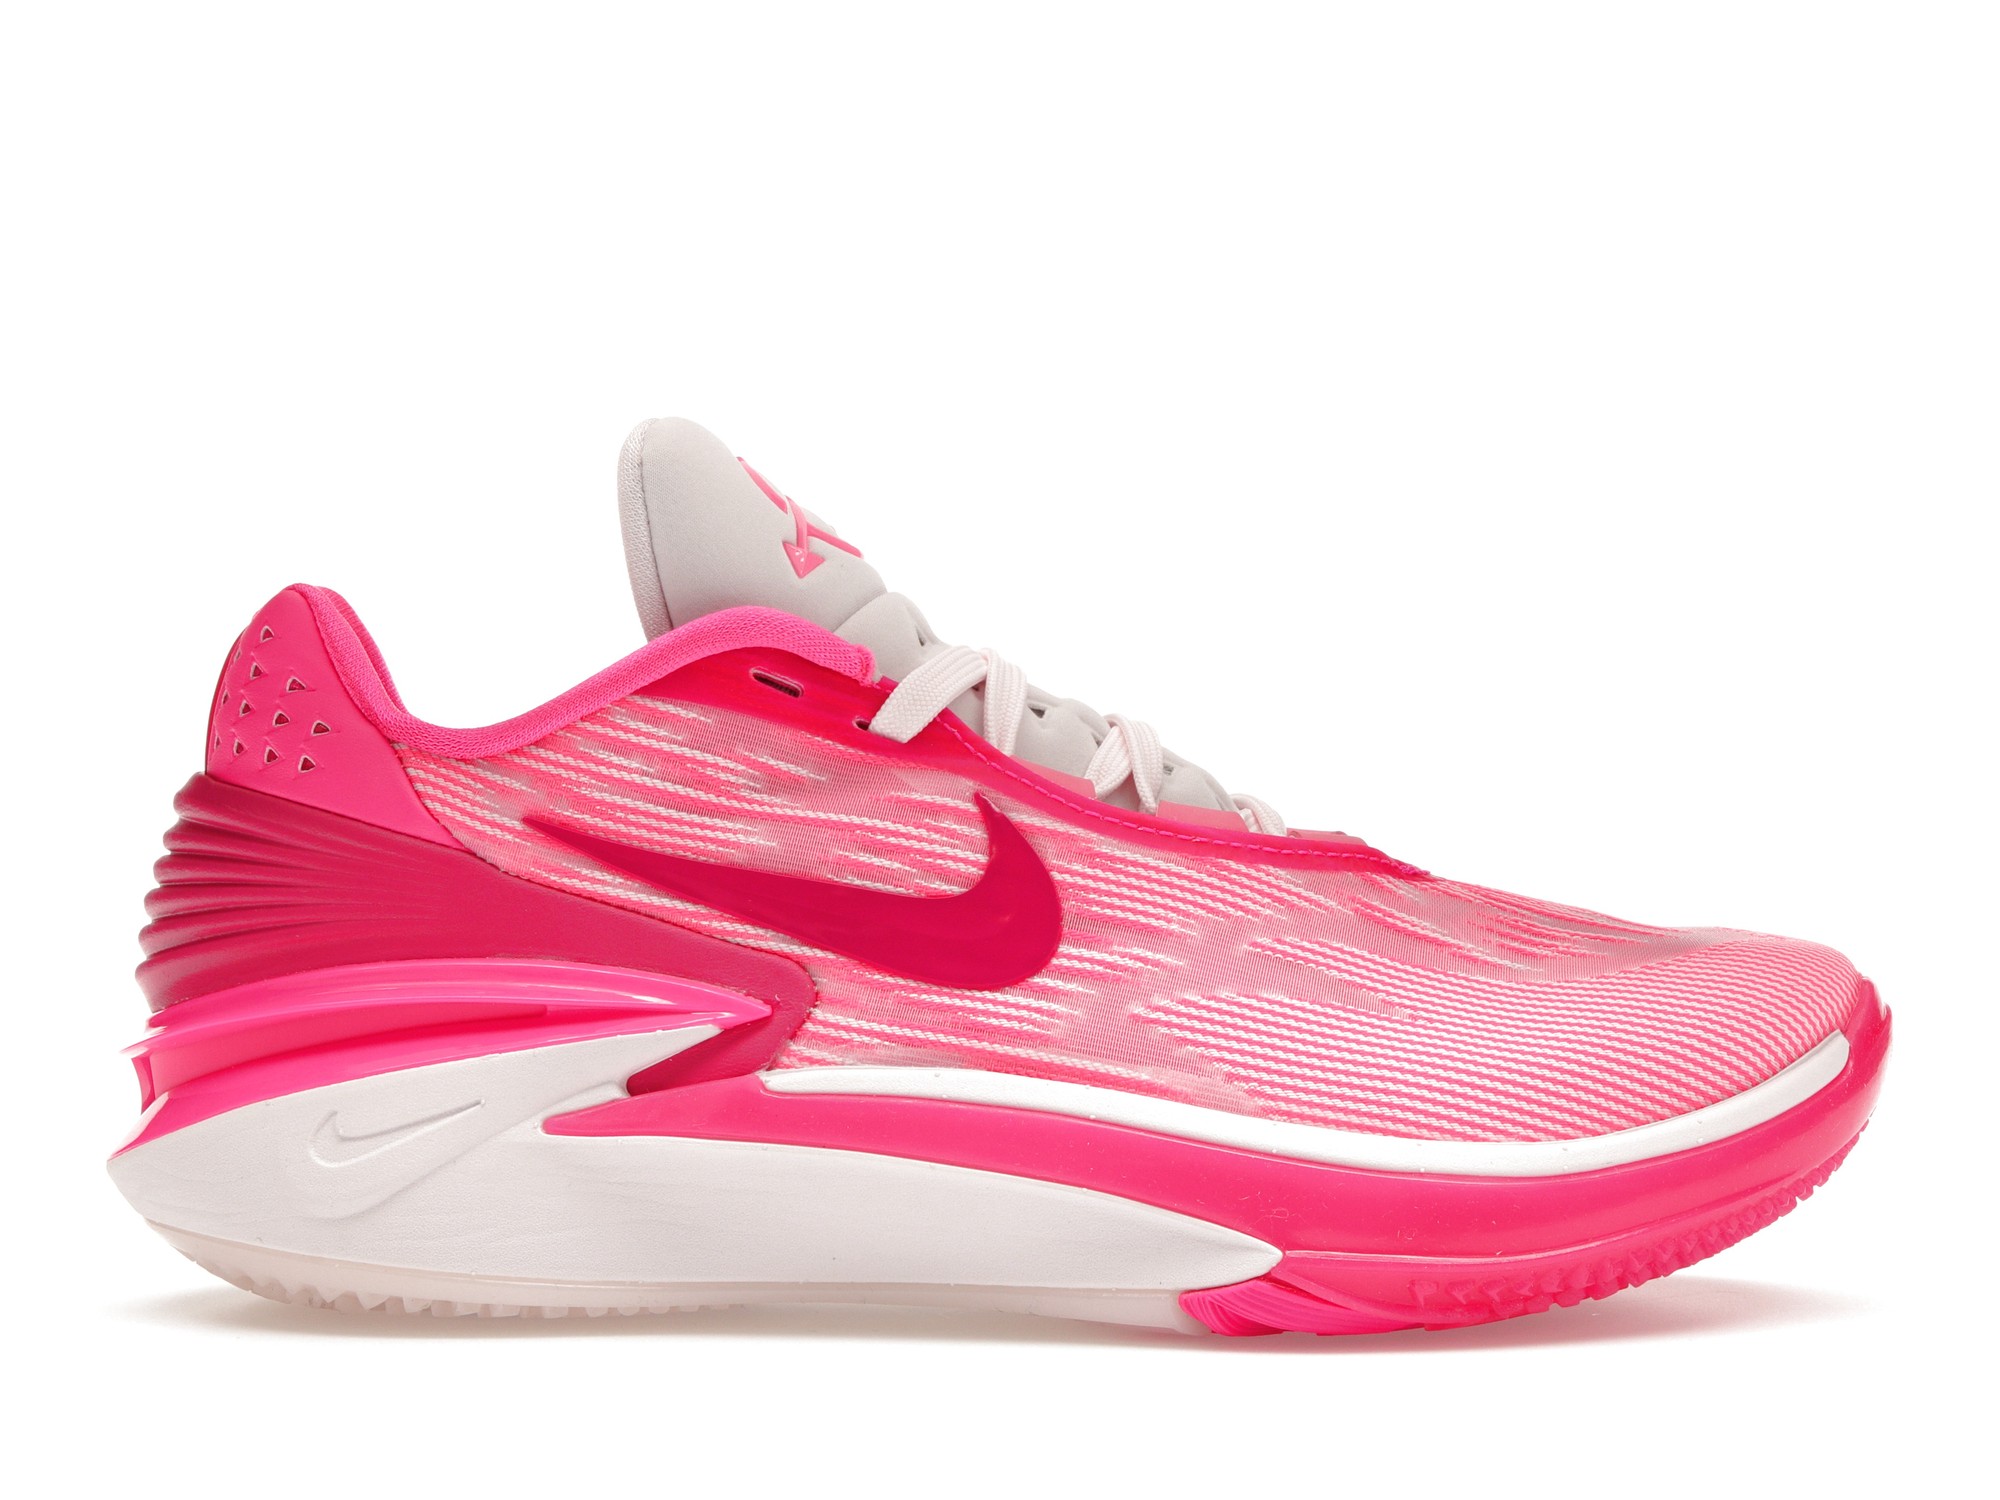 Nike Zoom GT Cut 2 Hyper Pink (Women's) - FQ8706-604 - US